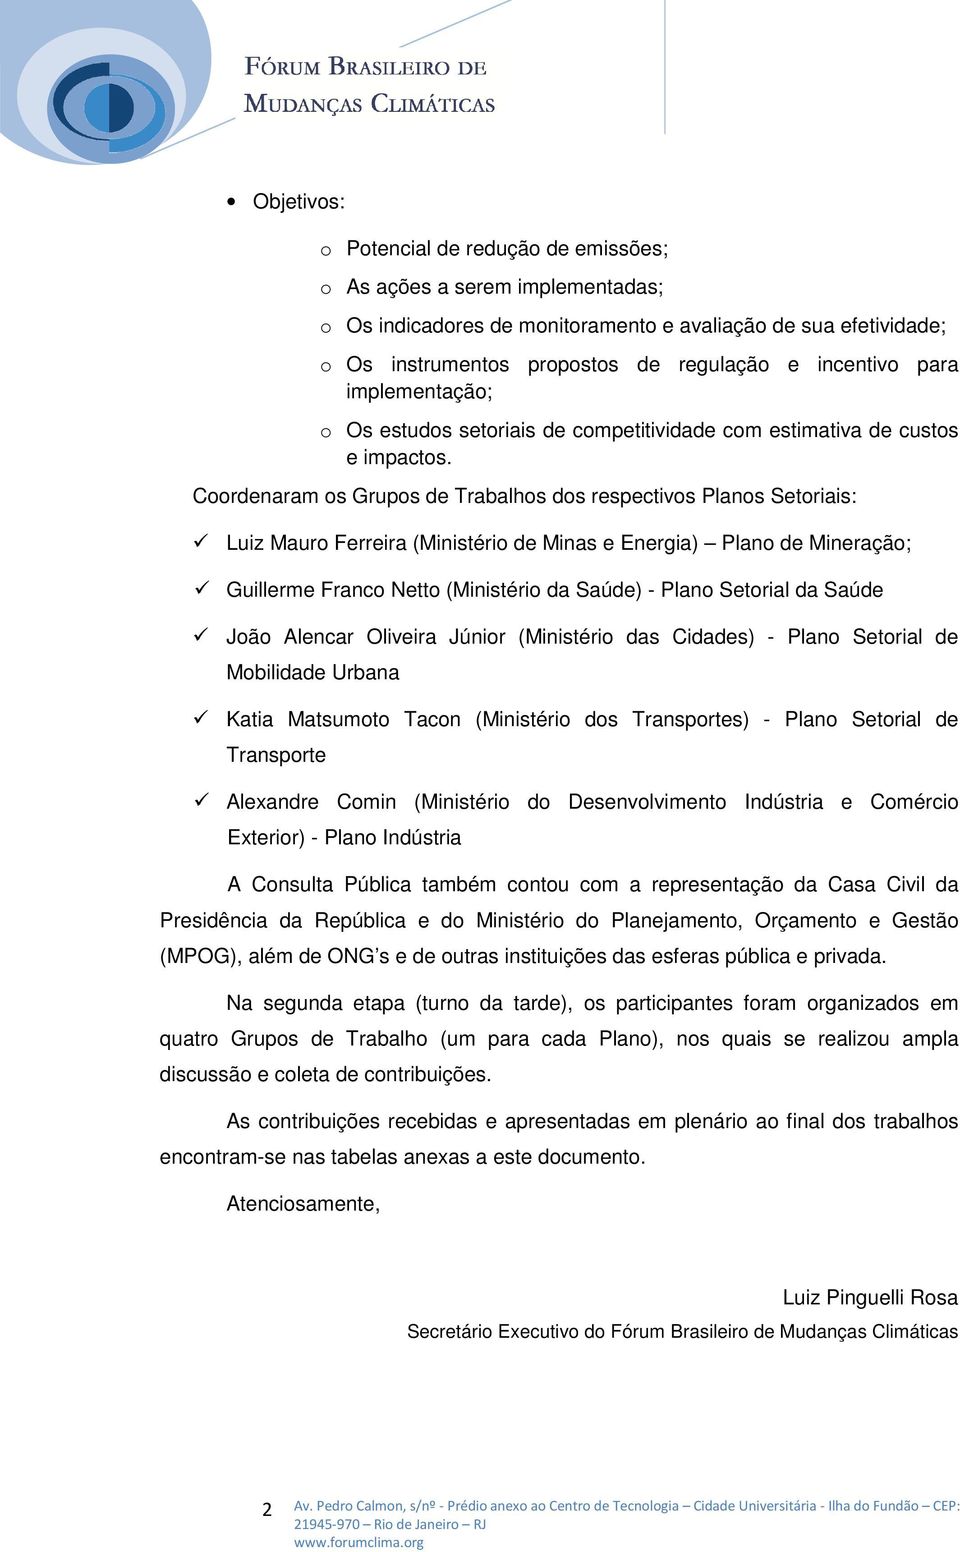 Coordenaram os Grupos de Trabalhos dos respectivos Planos Setoriais: Luiz Mauro Ferreira (Ministério de Minas e Energia) Plano de Mineração; Guillerme Franco Netto (Ministério da Saúde) - Plano